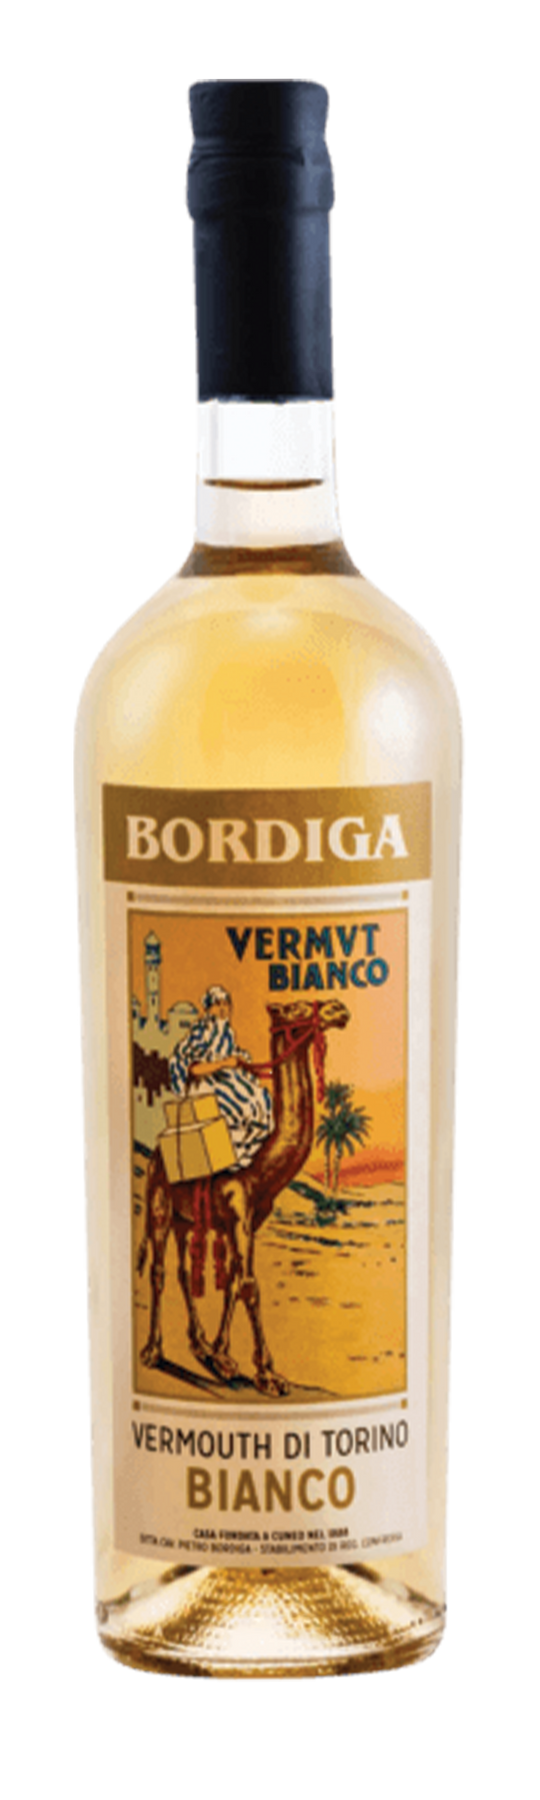 Bordiga Bianco 18% 75cl Vermouth di Torino